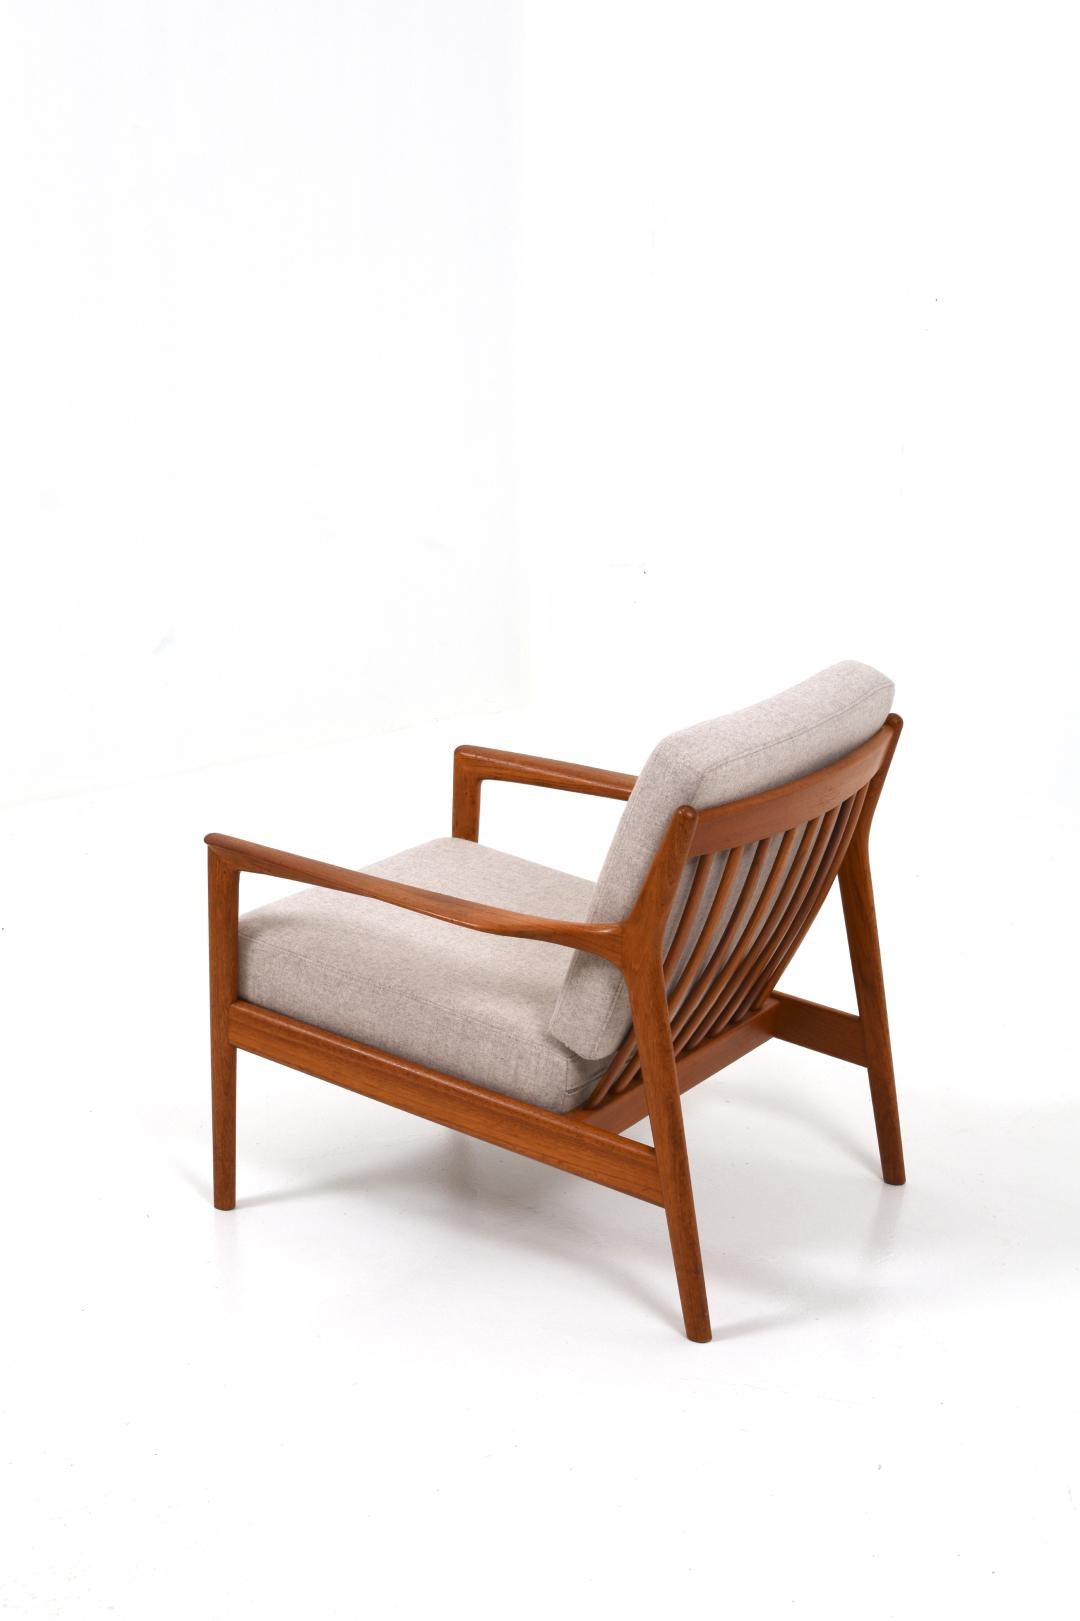 L'un des fauteuils vintage les plus recherchés ! Le modèle s'appelle USA75 et a été conçu par Folke Calle pour DUX. En ce moment, nous en avons deux en stock pour que vous puissiez en avoir une paire !

Le fauteuil date des années 60, il a un design